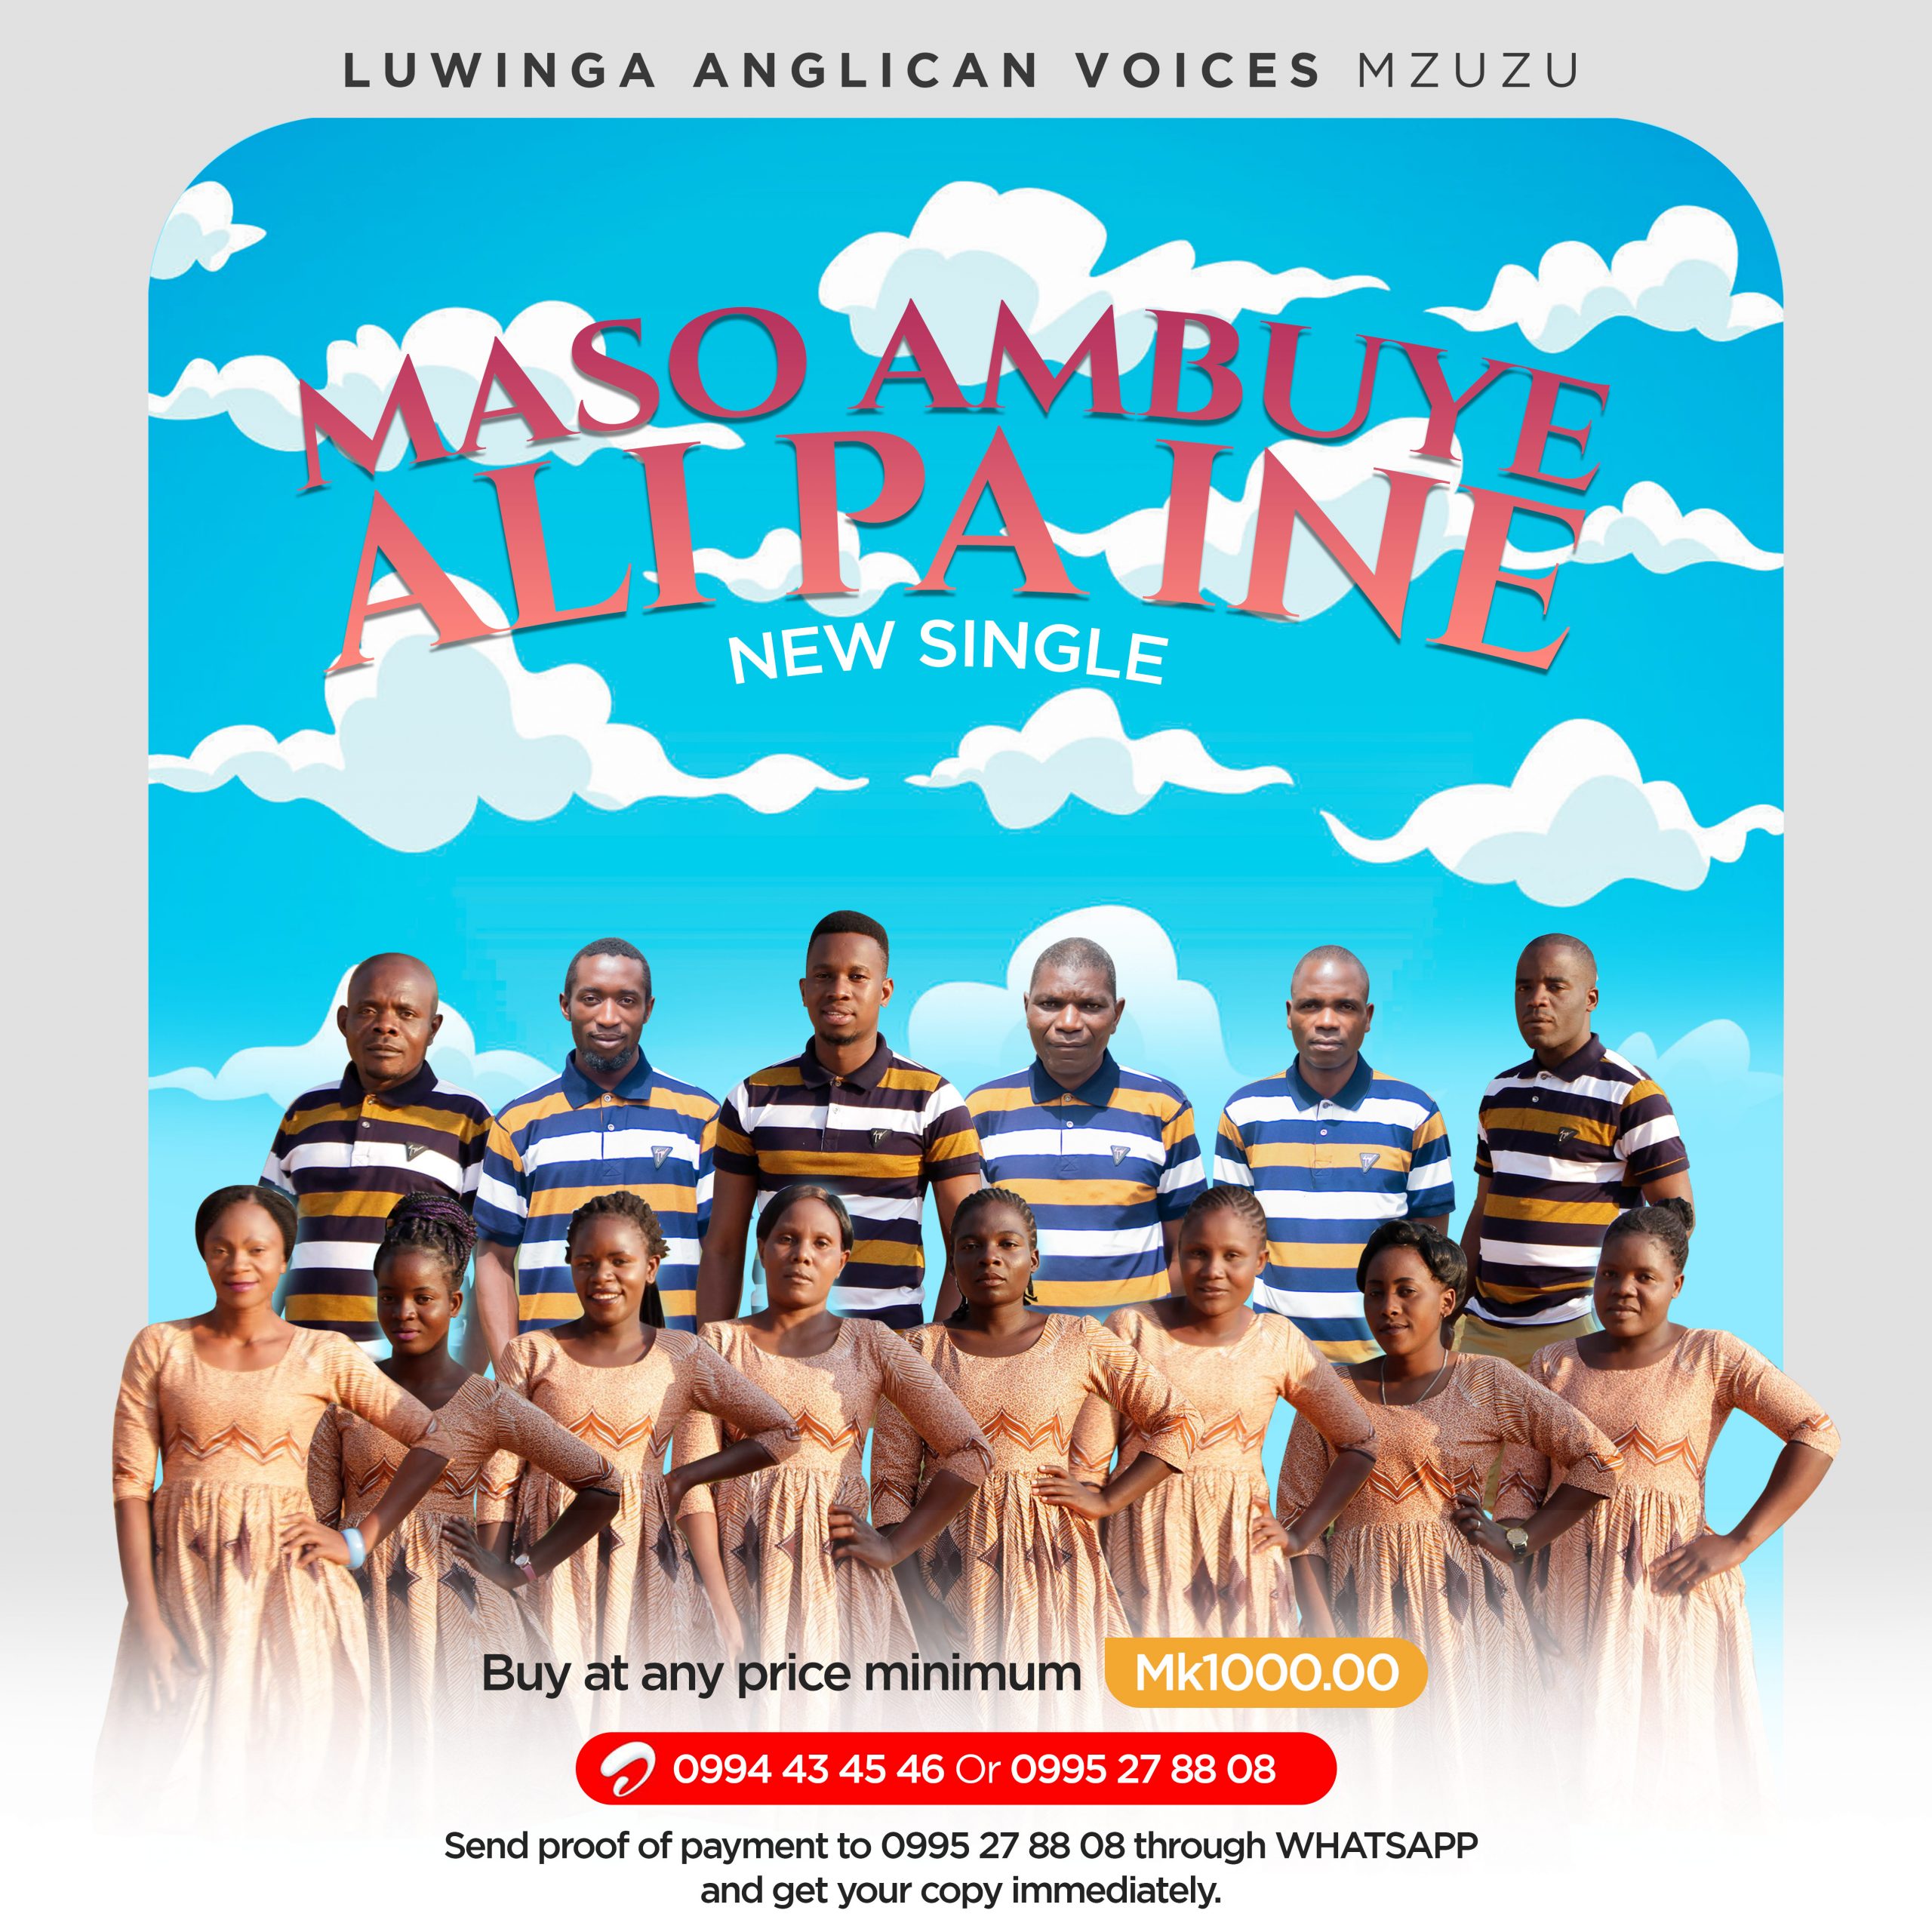 Luwinga Anglican Voices – Maso Ambuye Ali Pa Ine